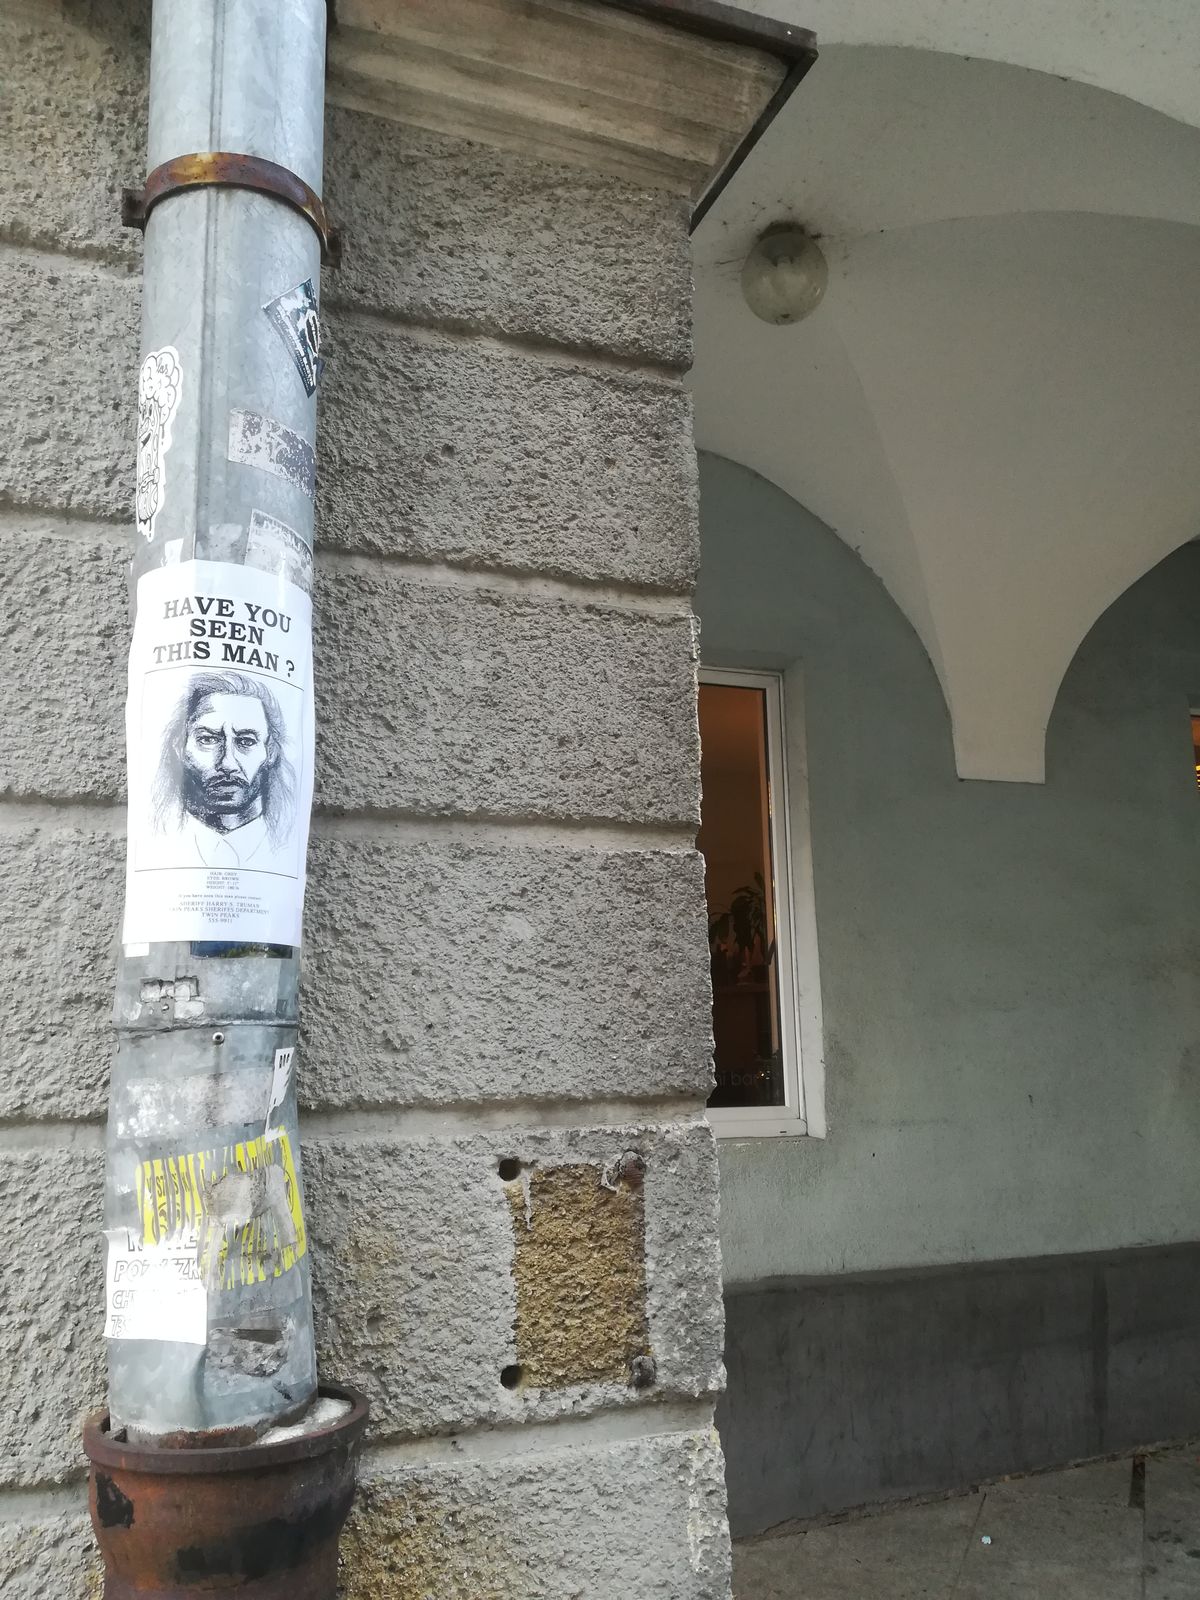 Na olsztyńskiej starówce pojawiły się tajemnicze plakaty. Czy widzieliście mężczyznę przedstawionego na portrecie?